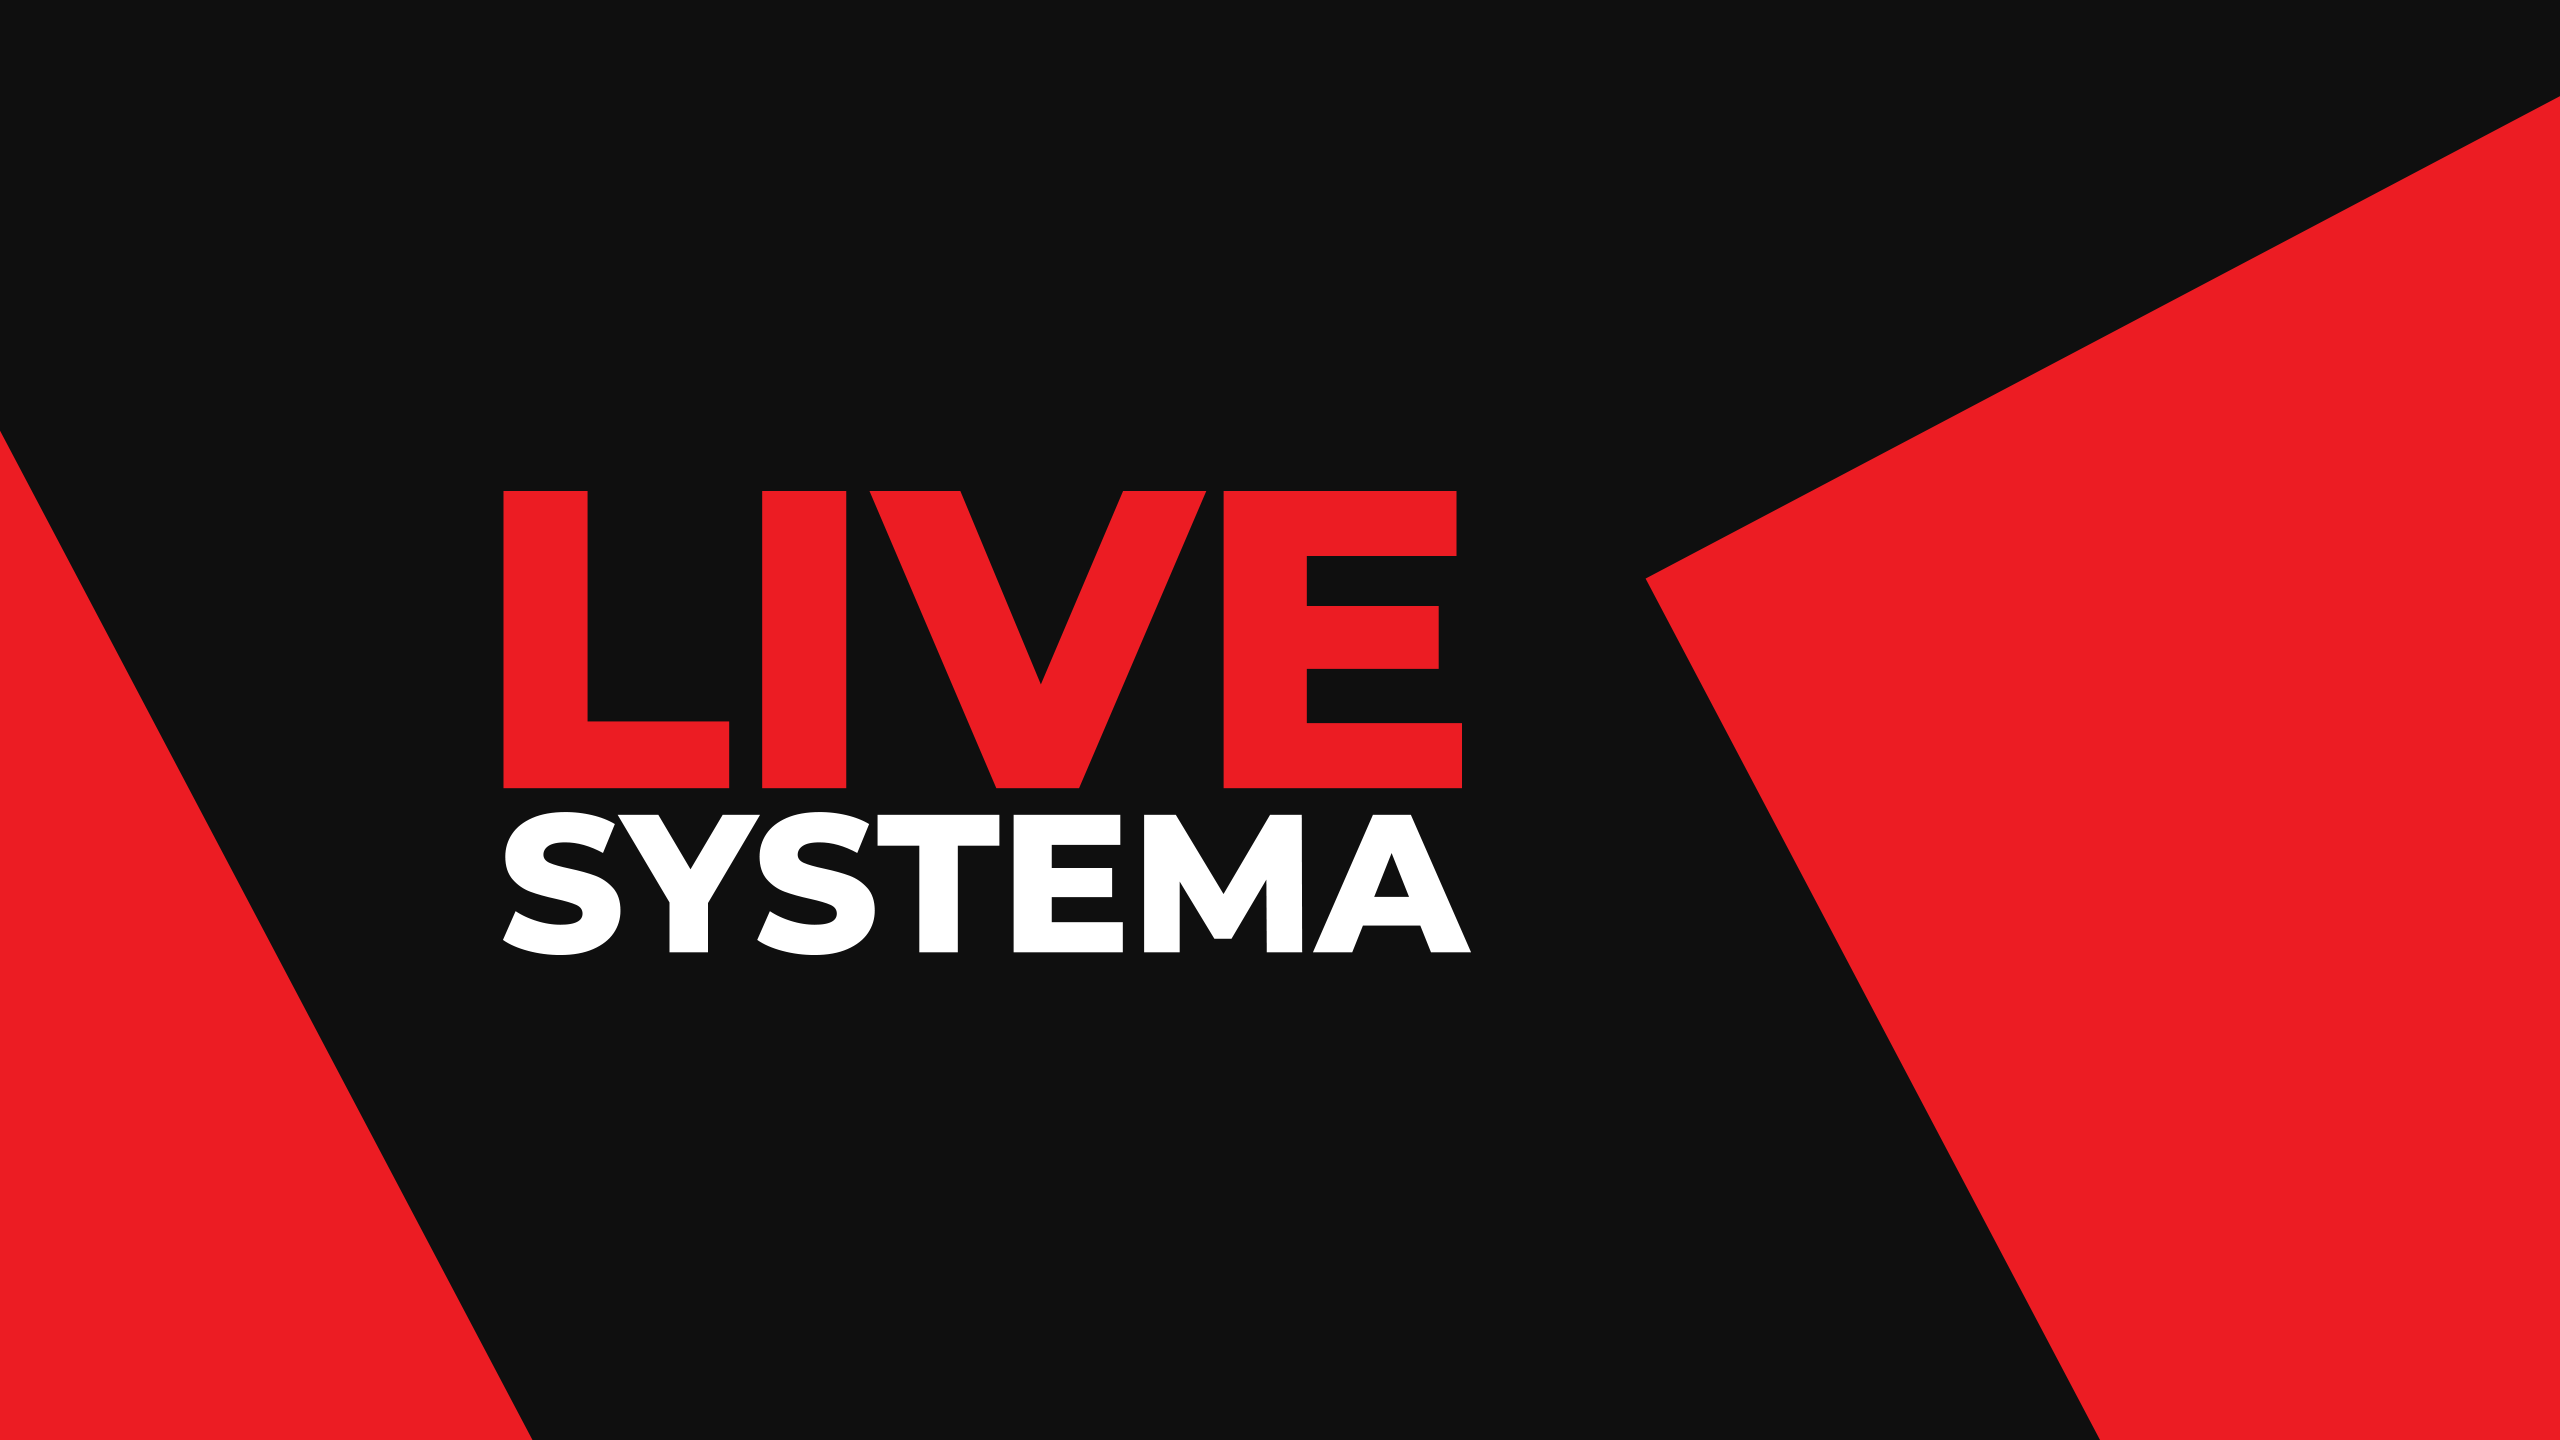 «Первая интерактивная музыкально-стриминговая платформа в социальных сетях “LIVE SYSTEMA” от Dirol